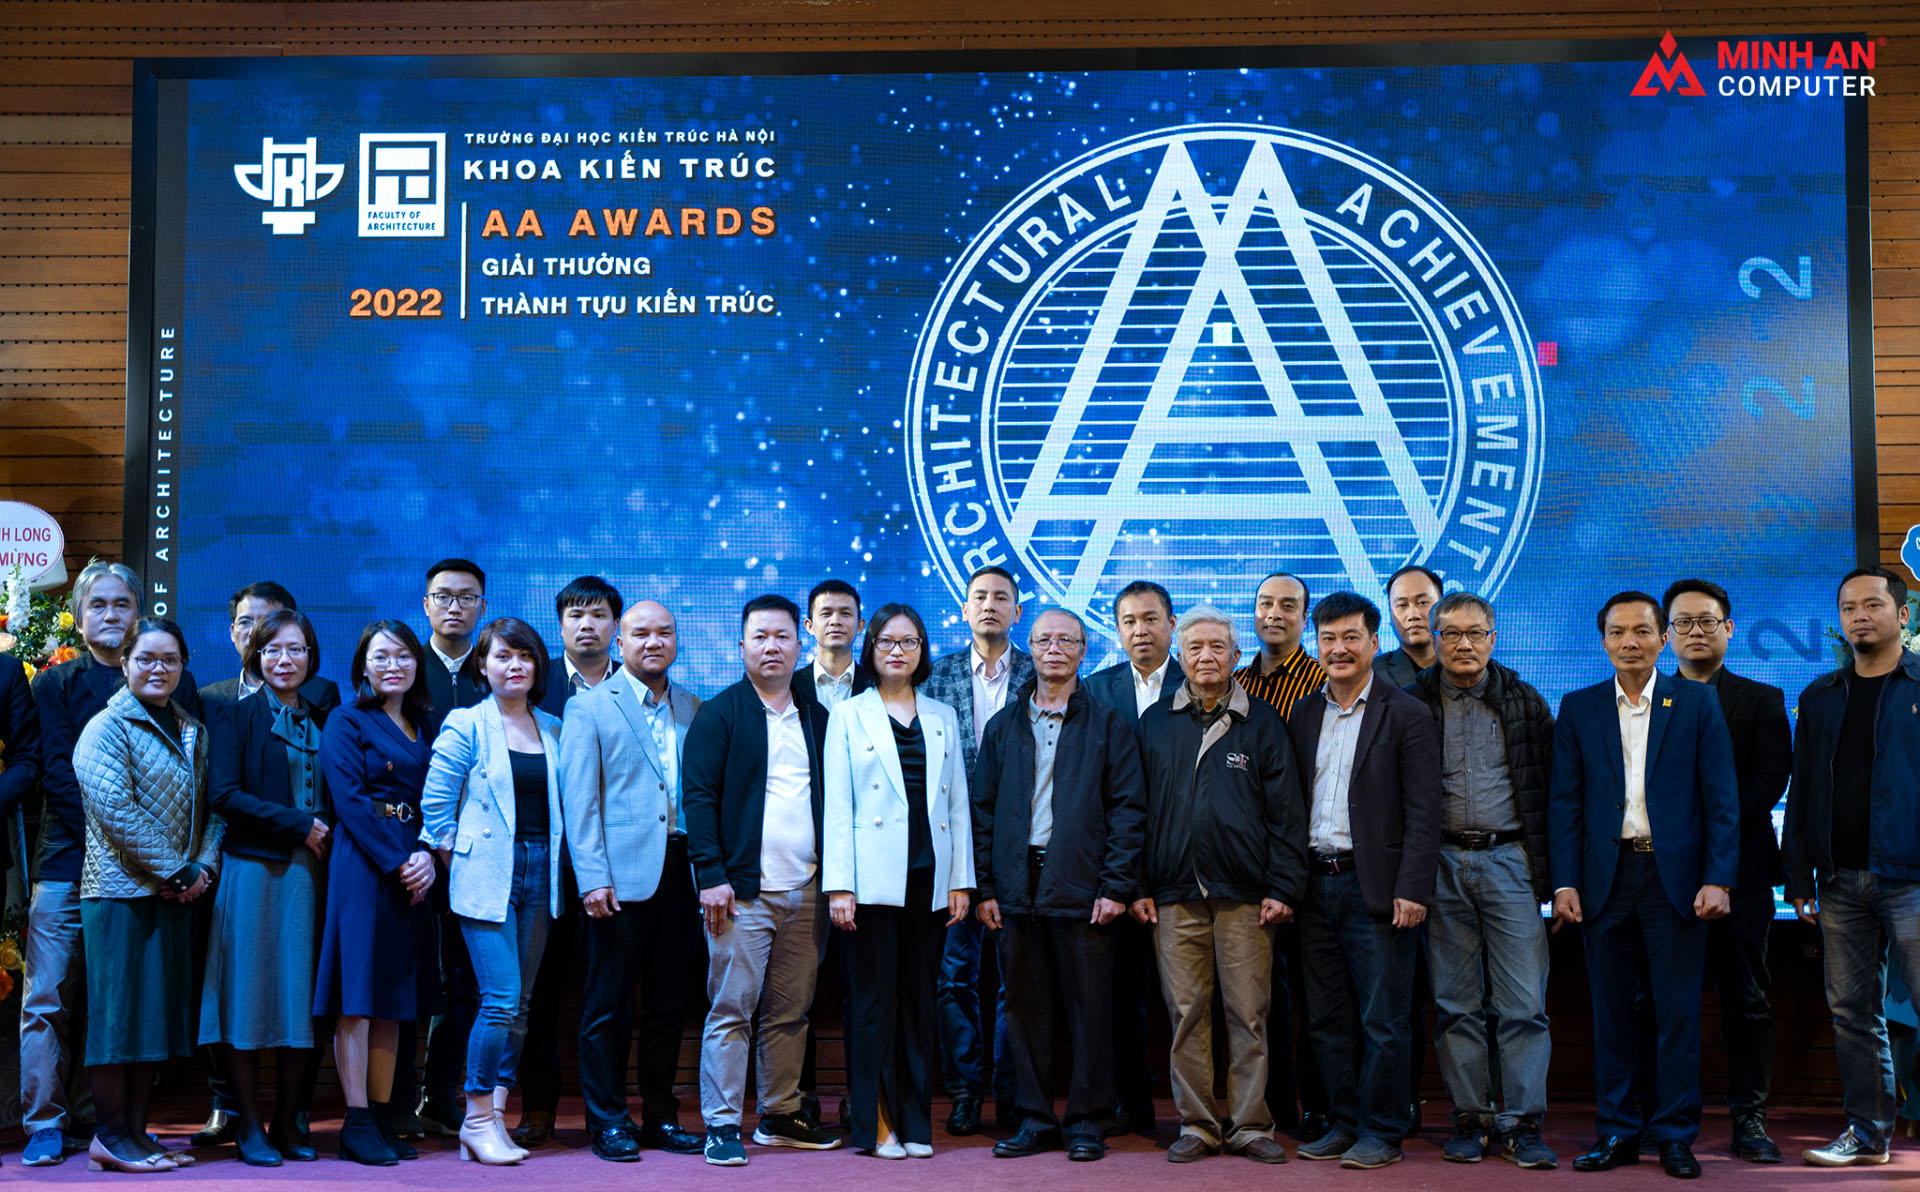 Minh An Computer đồng hành cùng AA Awards 2022